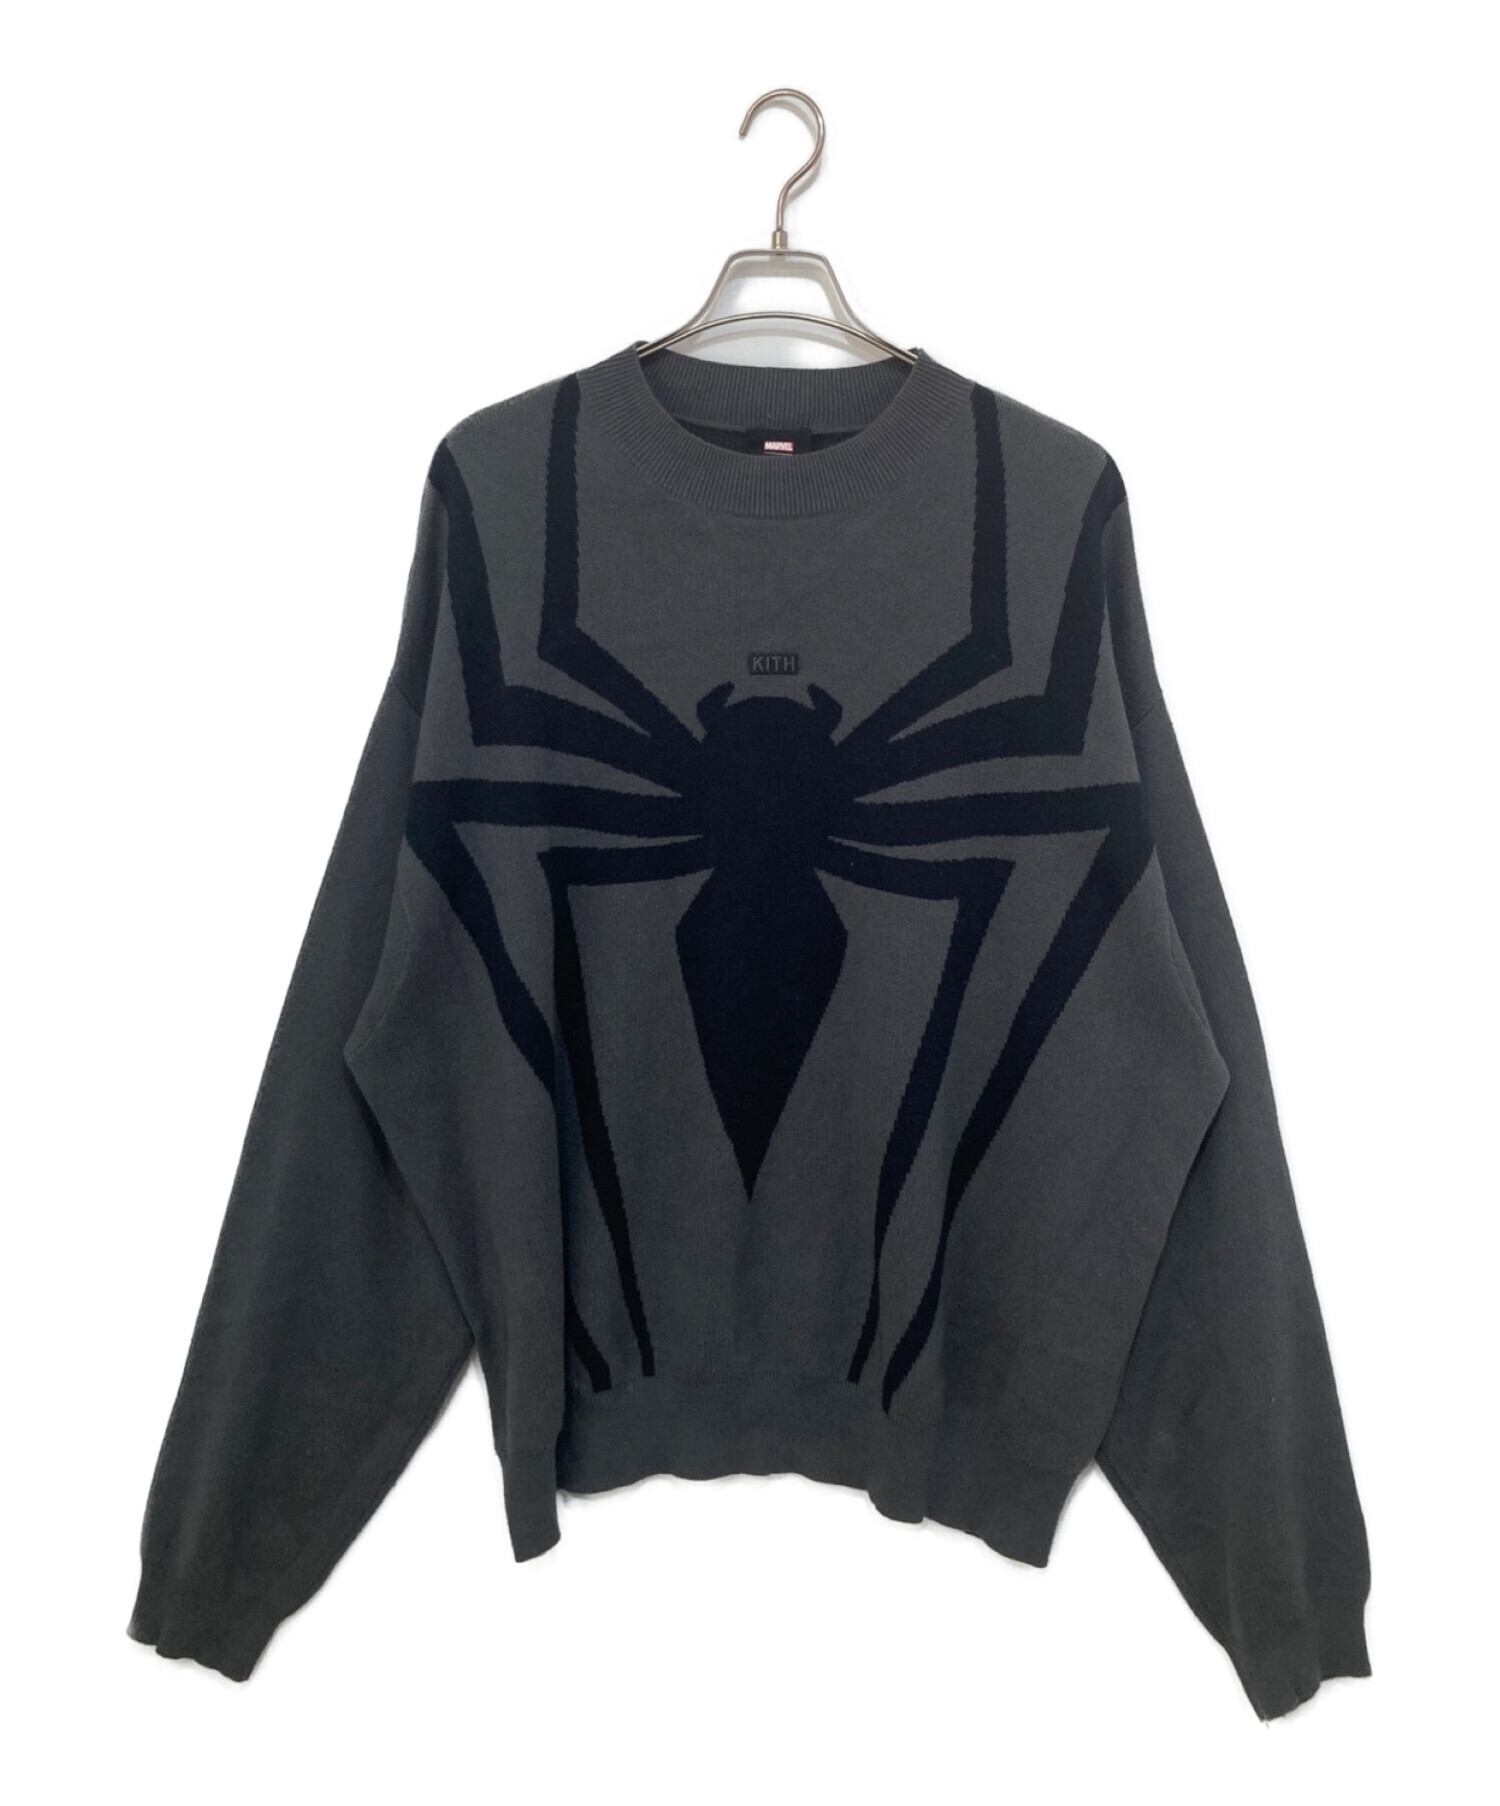 Kith × Marvel Spider-Man Venom m サイズ